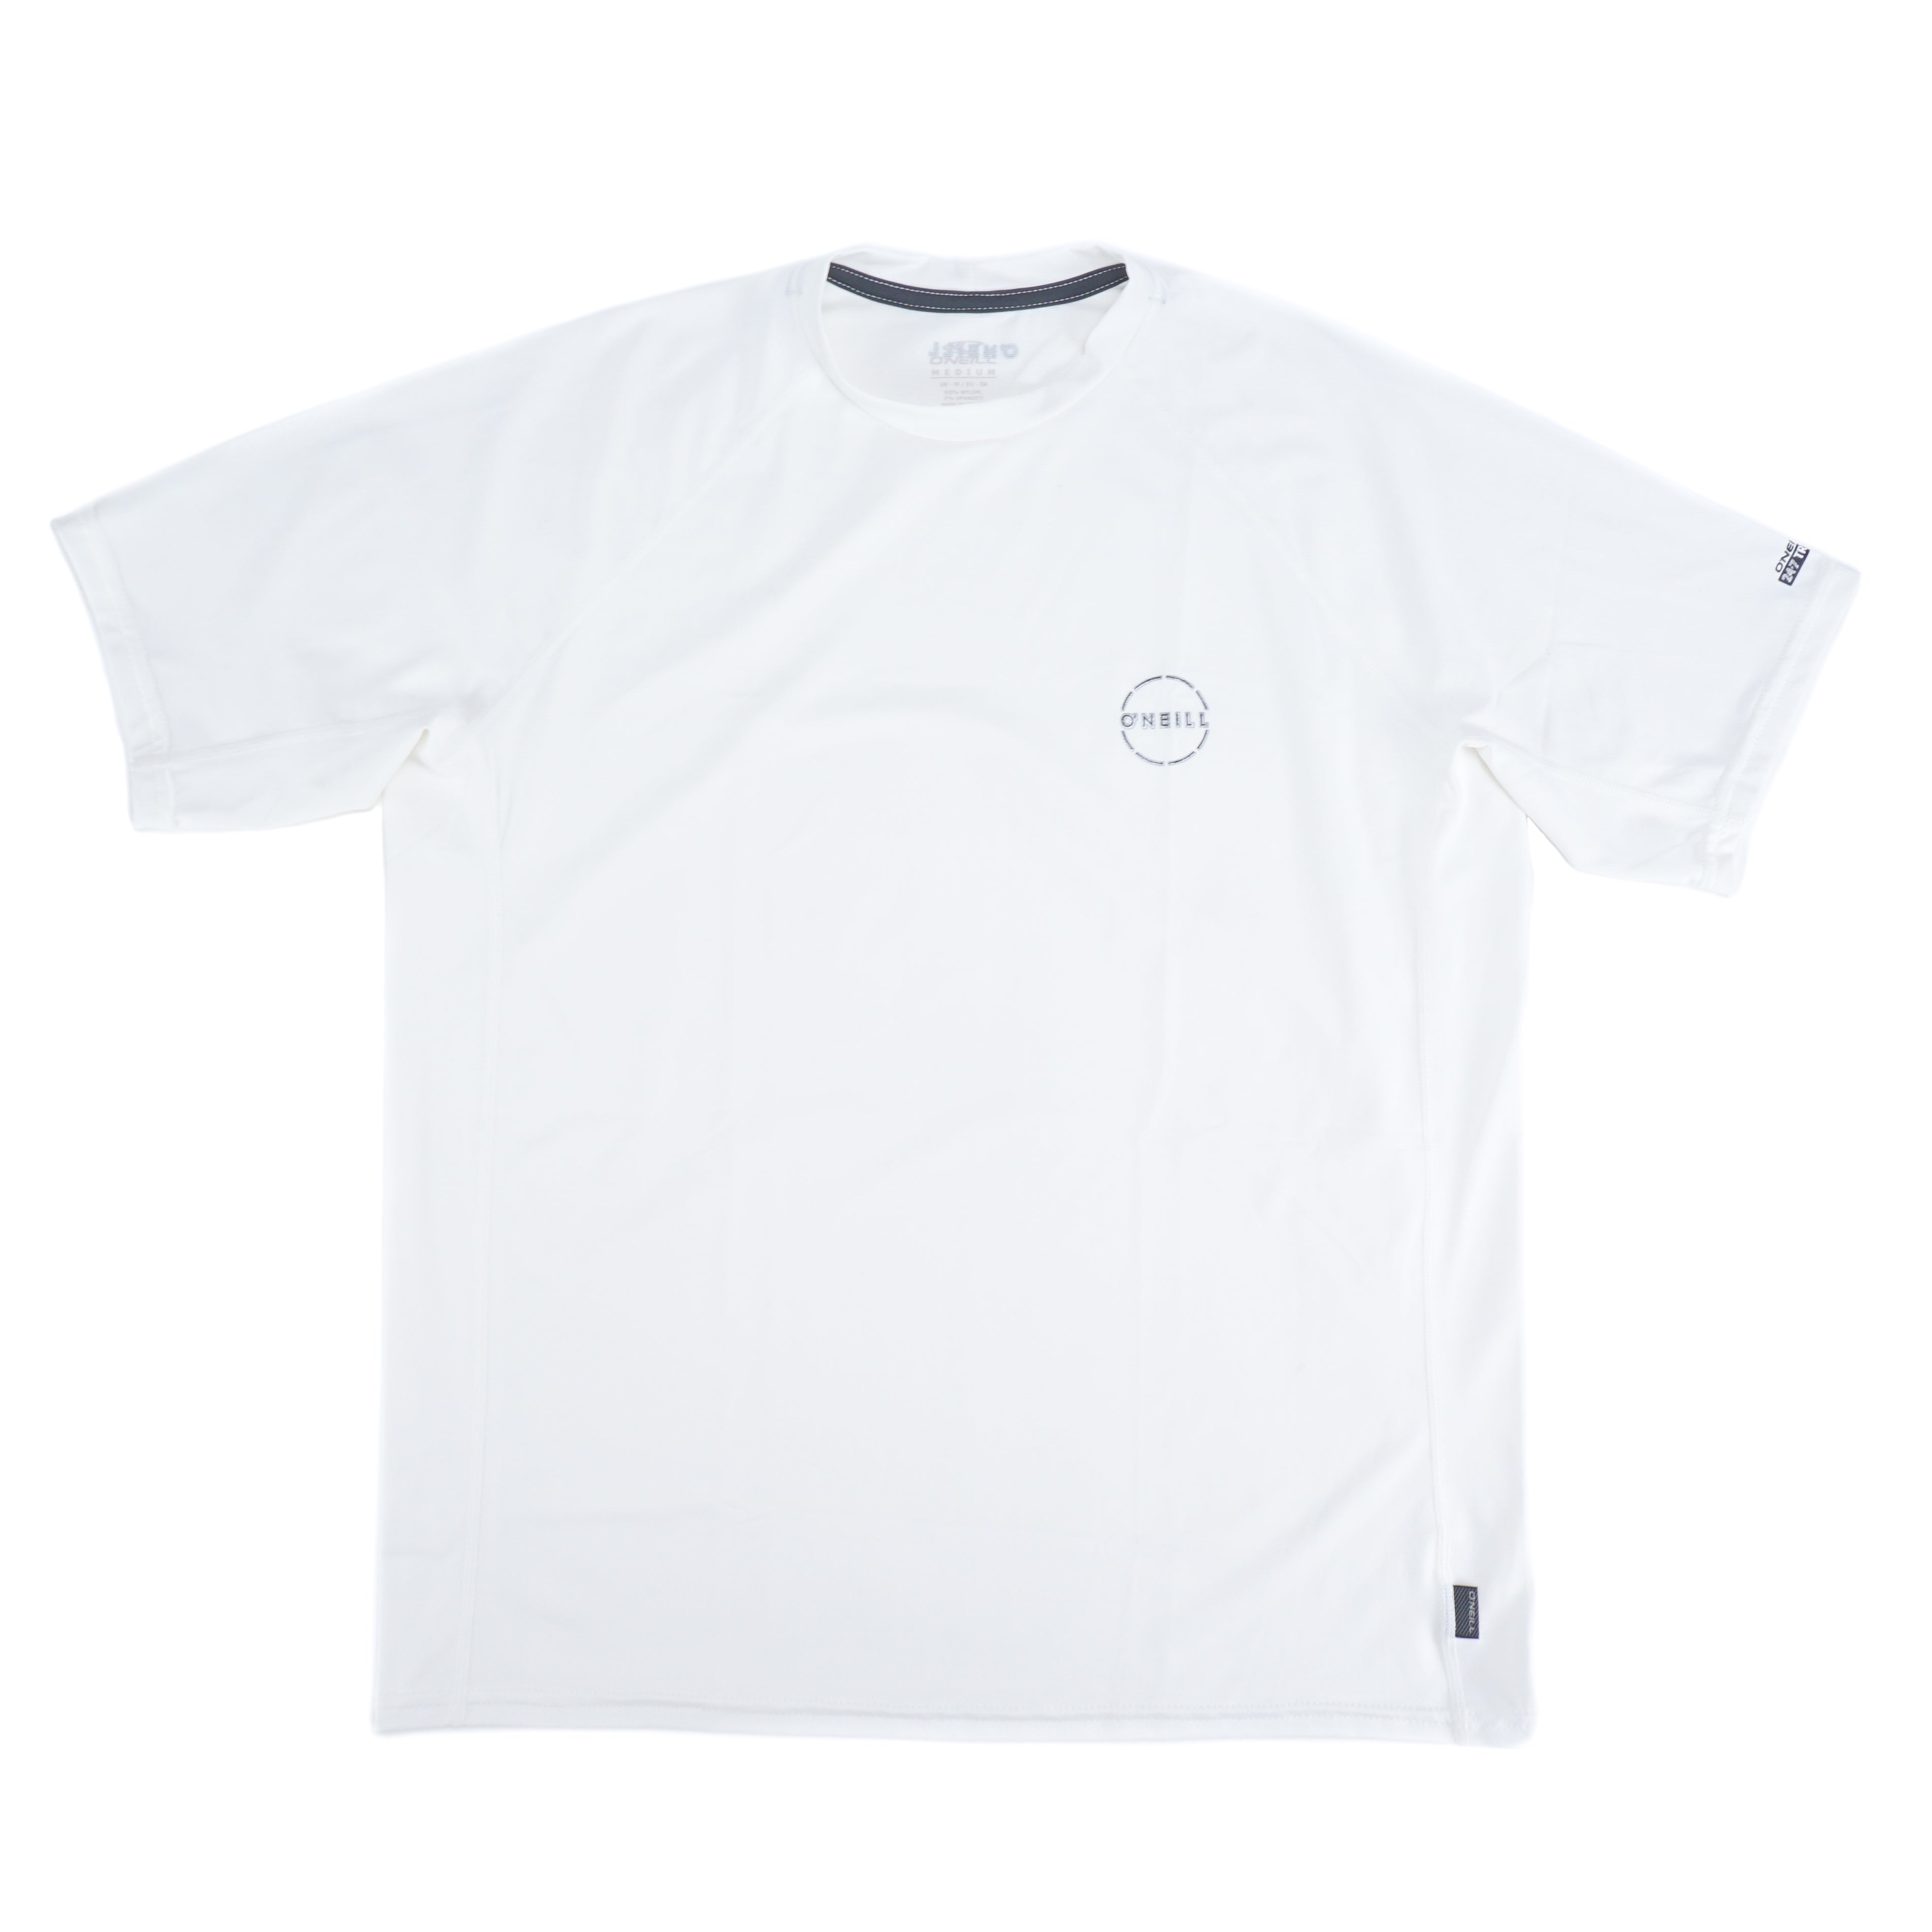 24-7 Traveler S/S Sun Shirt - White